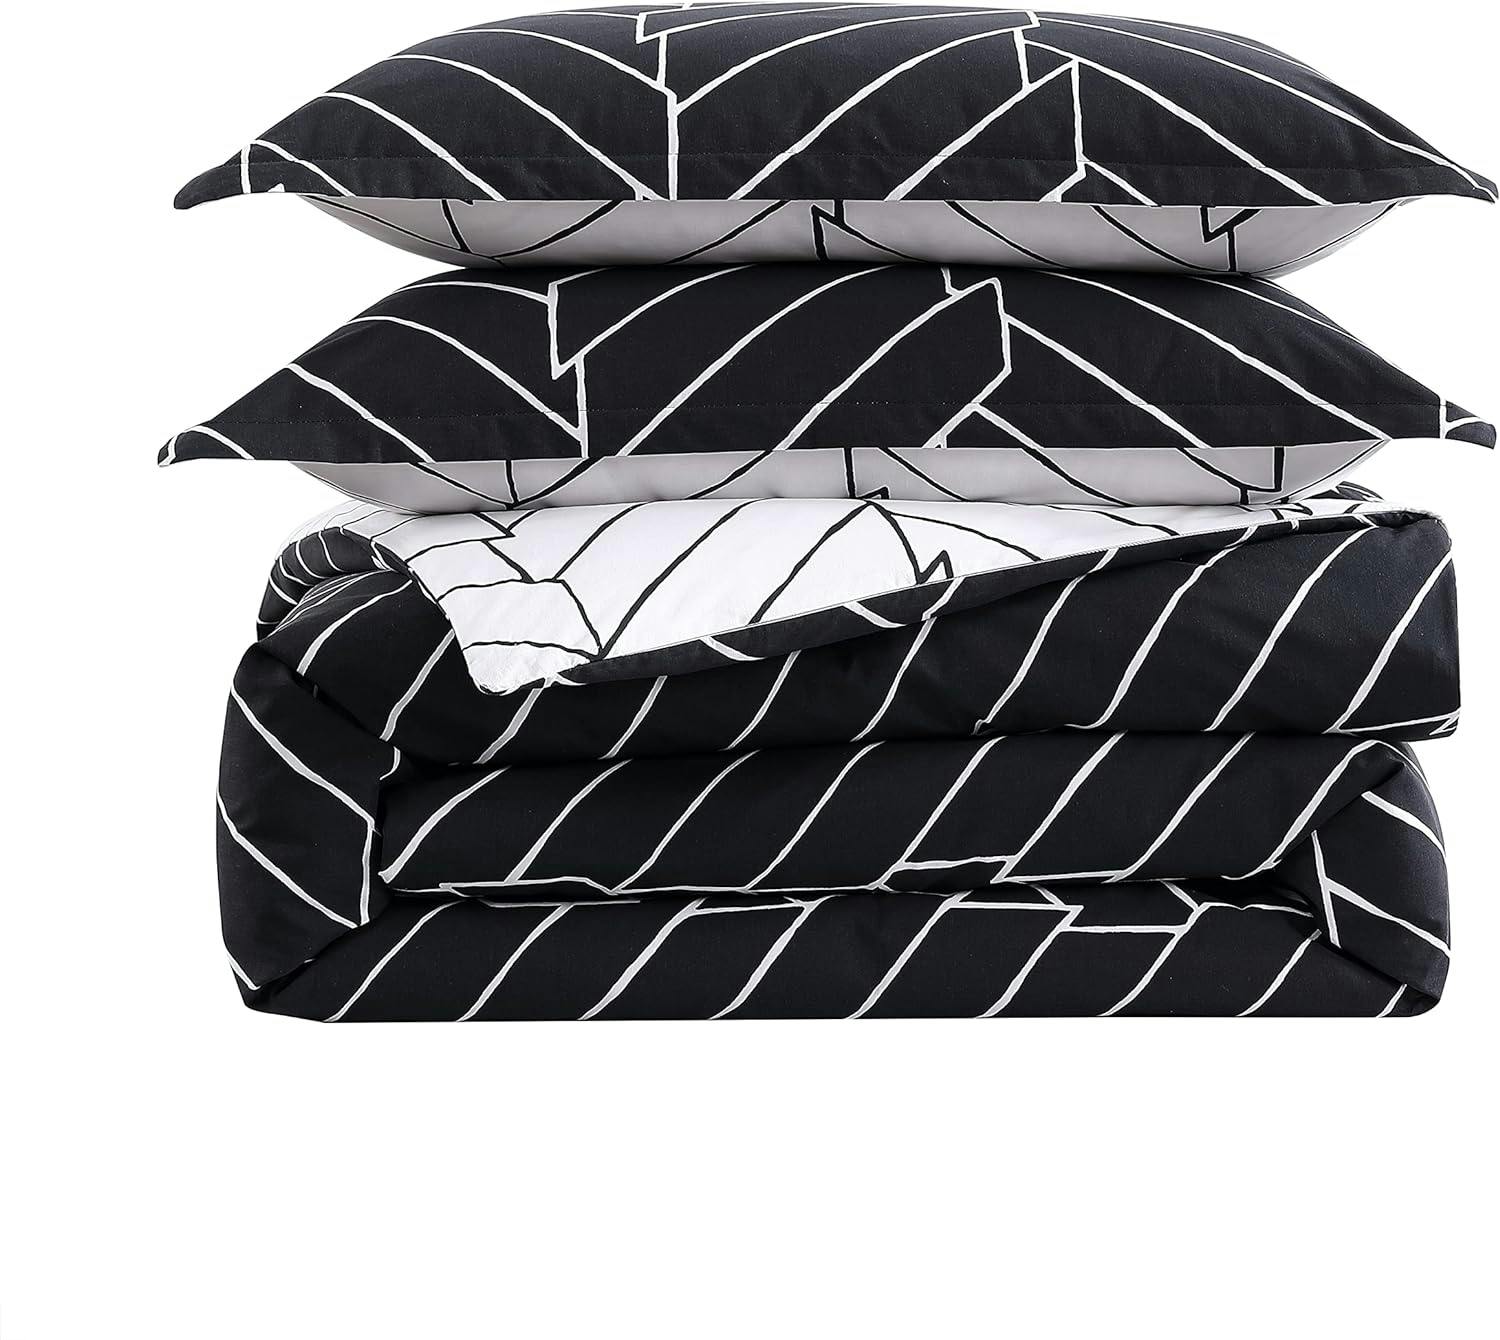 Reversible King Duvet Cover Set in Black and White Herringbone